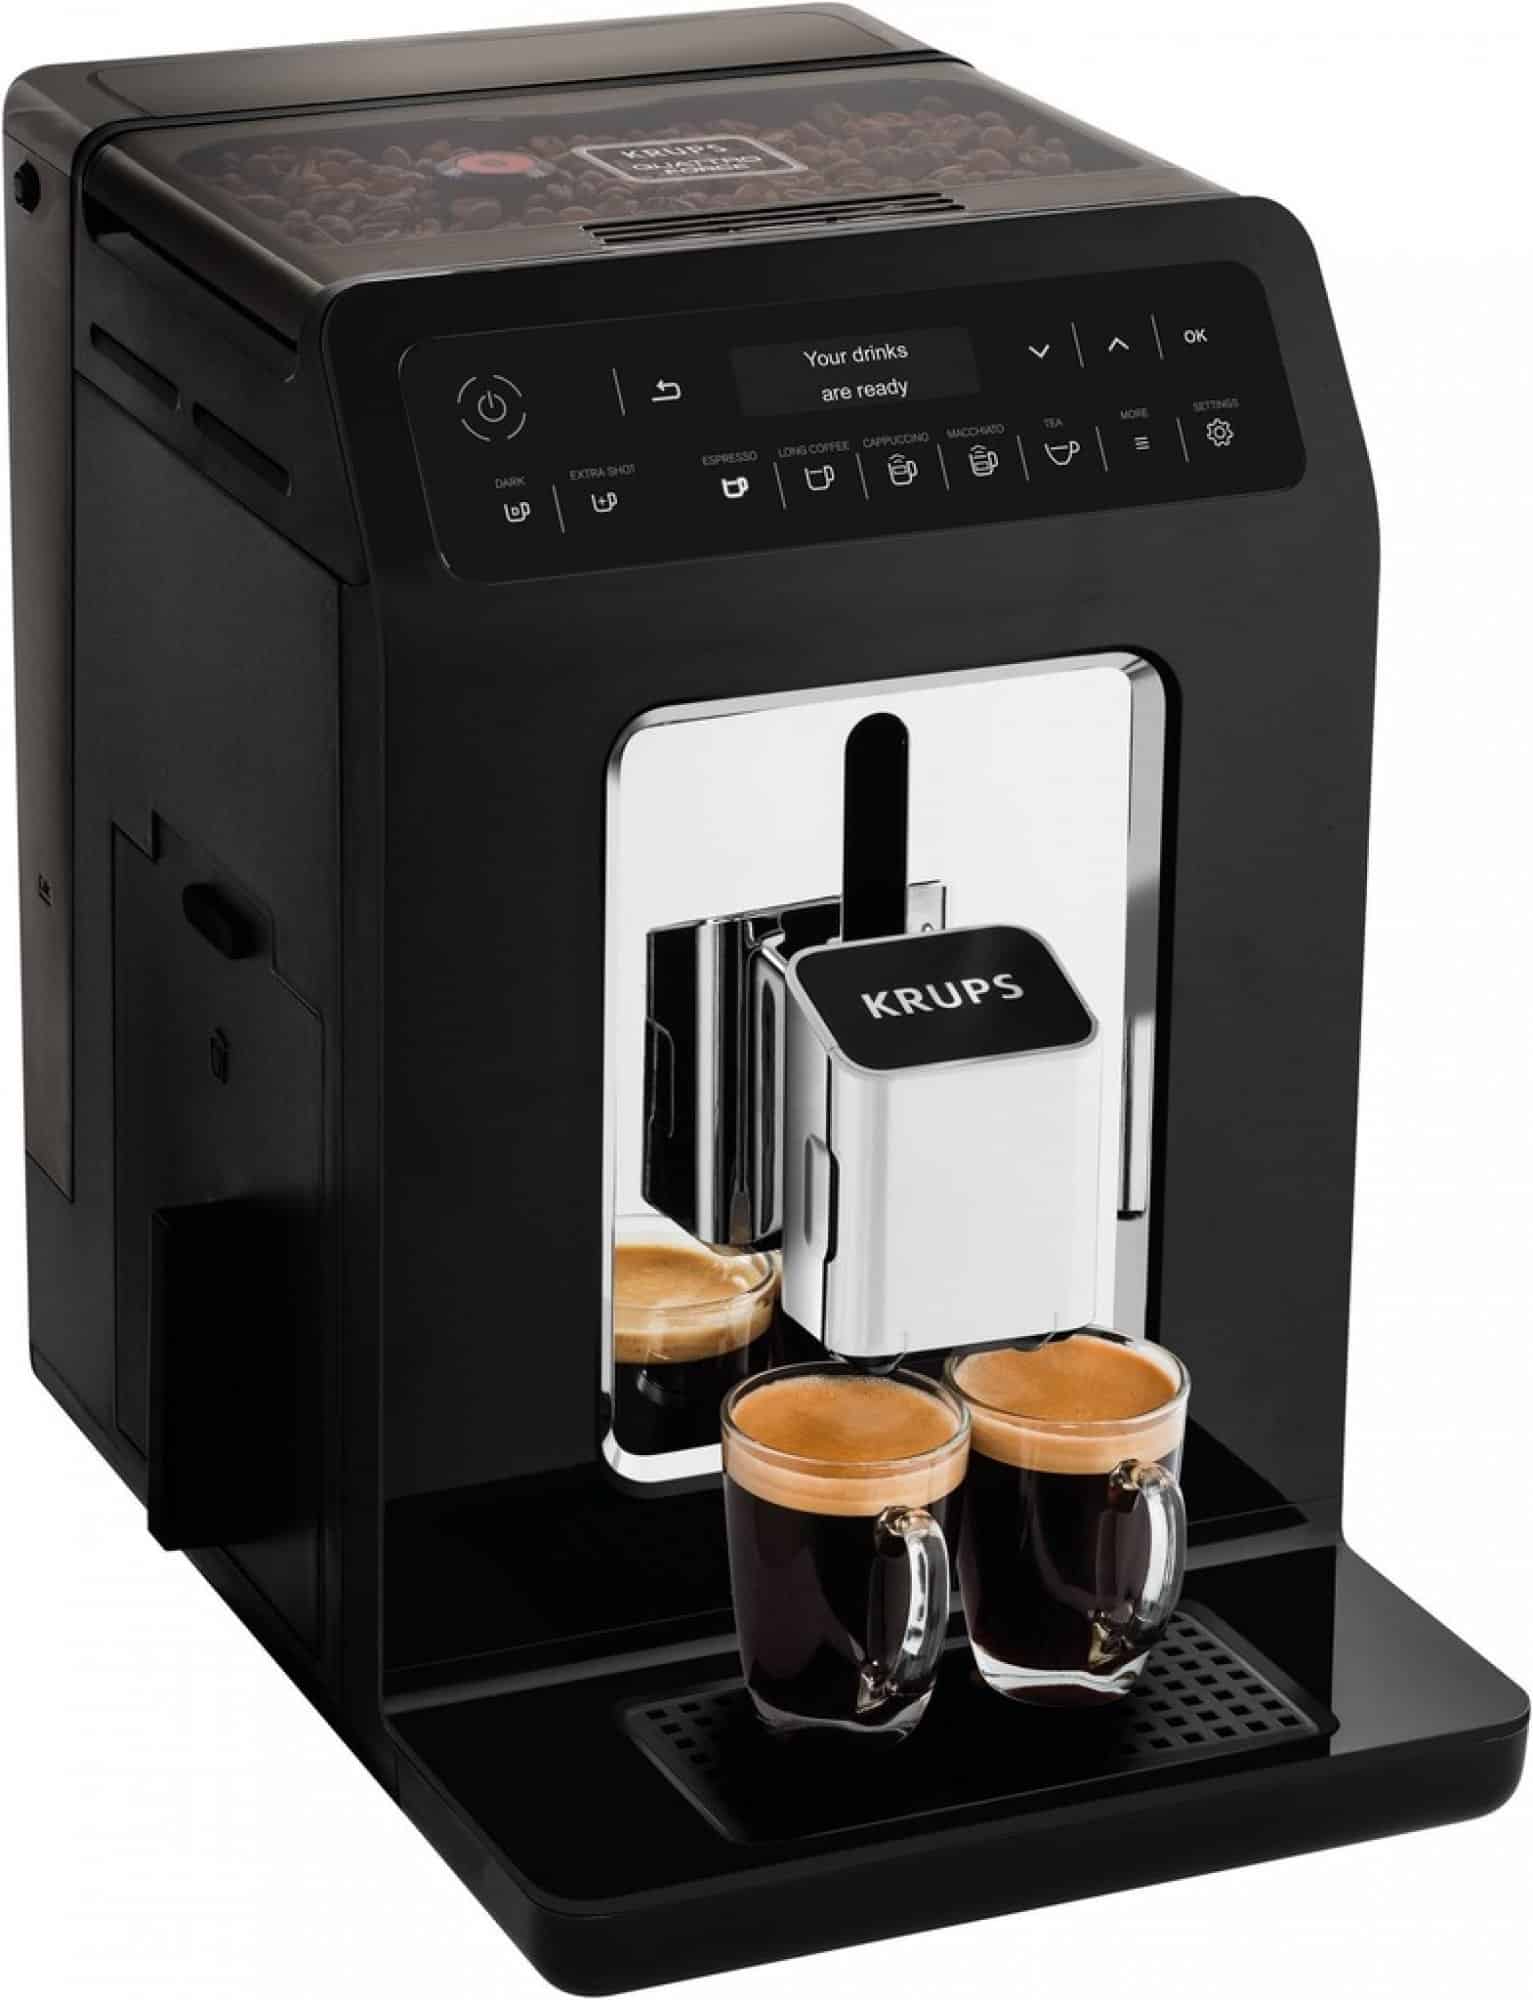 Automatický kávovar na espresso od značky Krups.